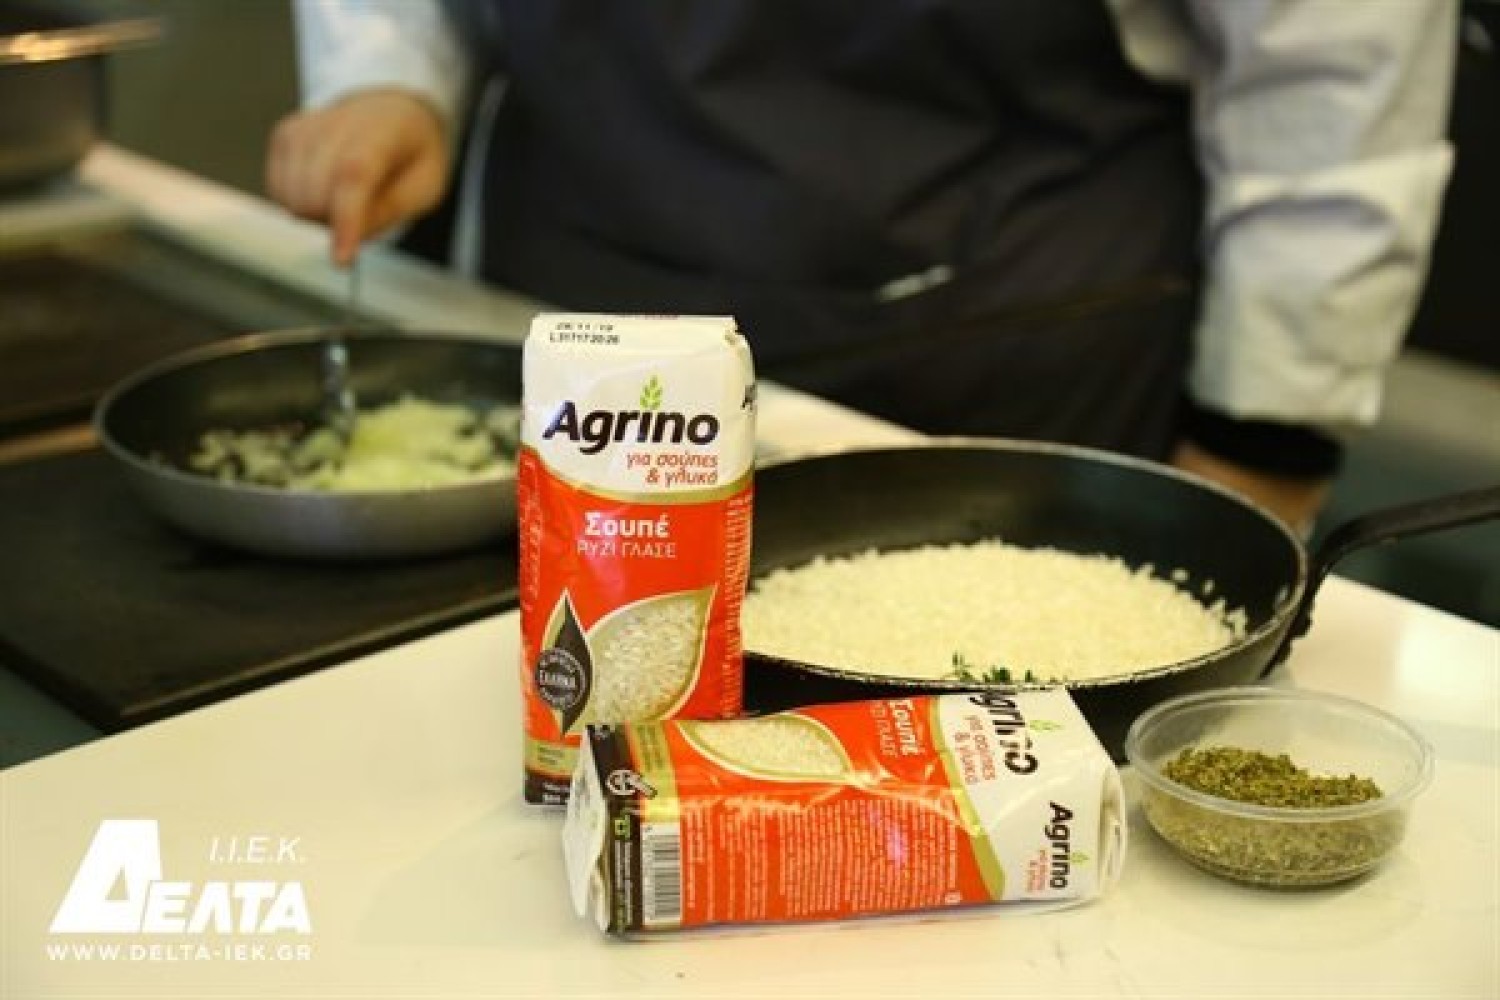 Εβδομάδα ρυζιού από το ΙΕΚ ΔΕΛΤΑ στο πλαίσιο συνεργασίας με την Agrino